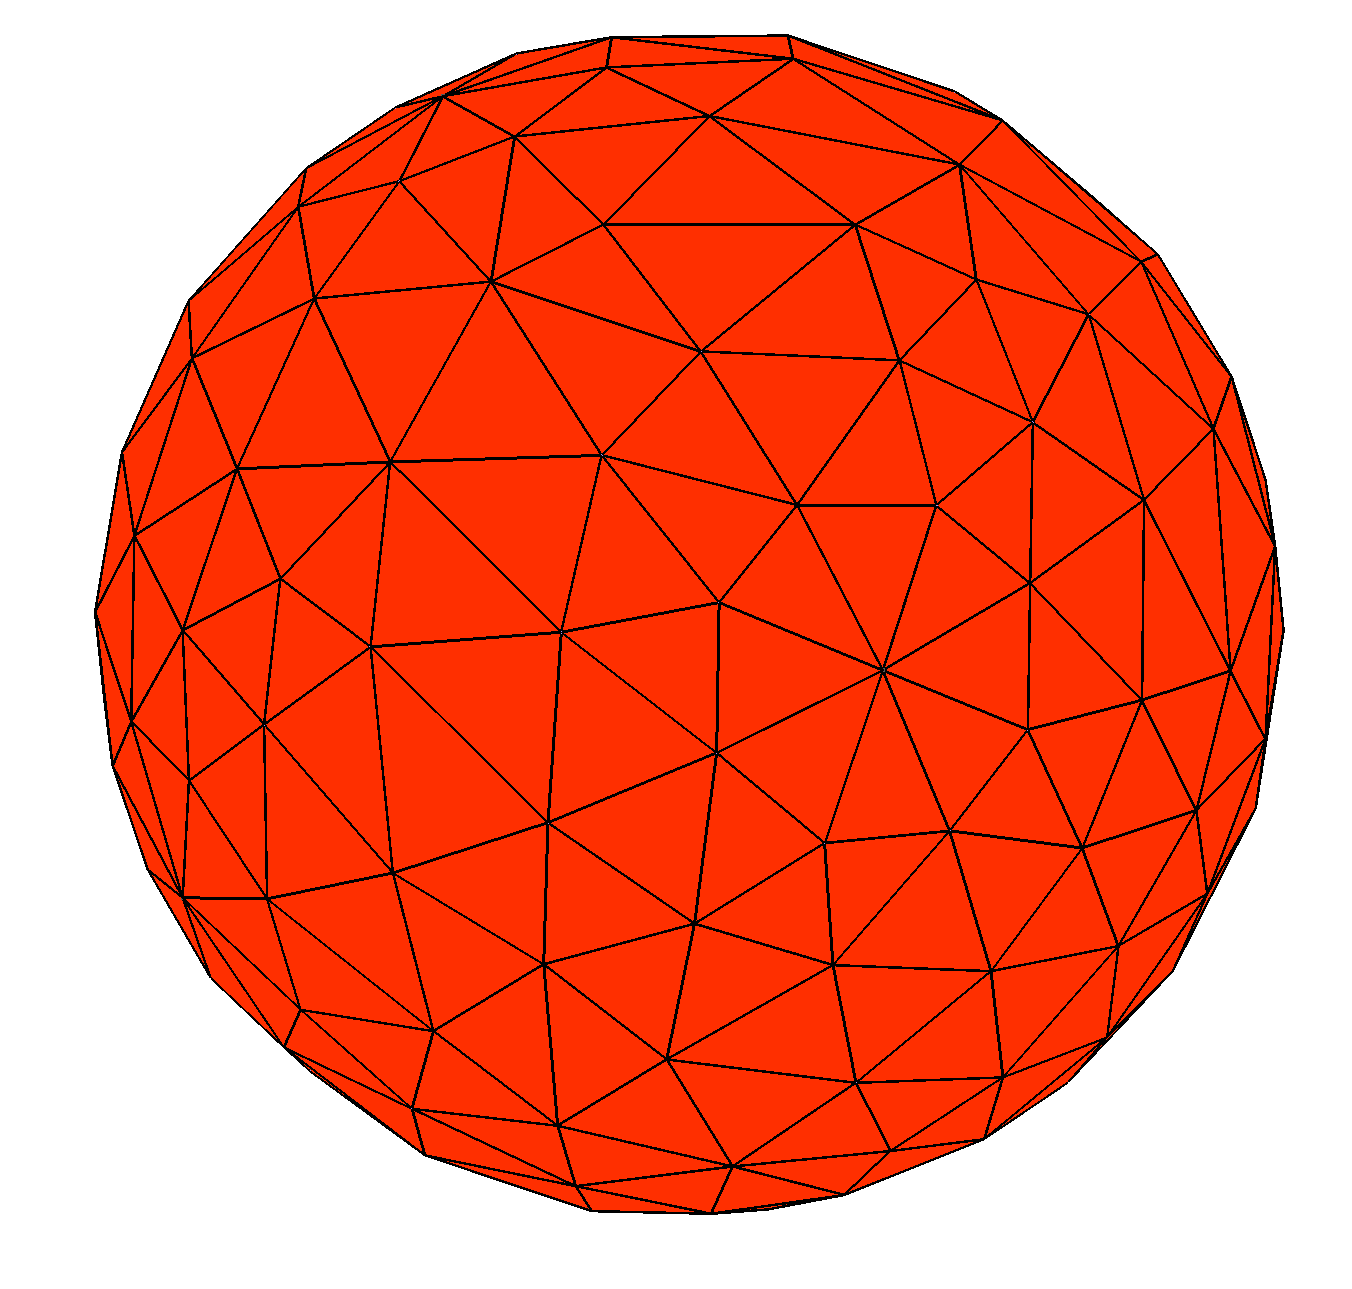 Sphere_677 mesh image